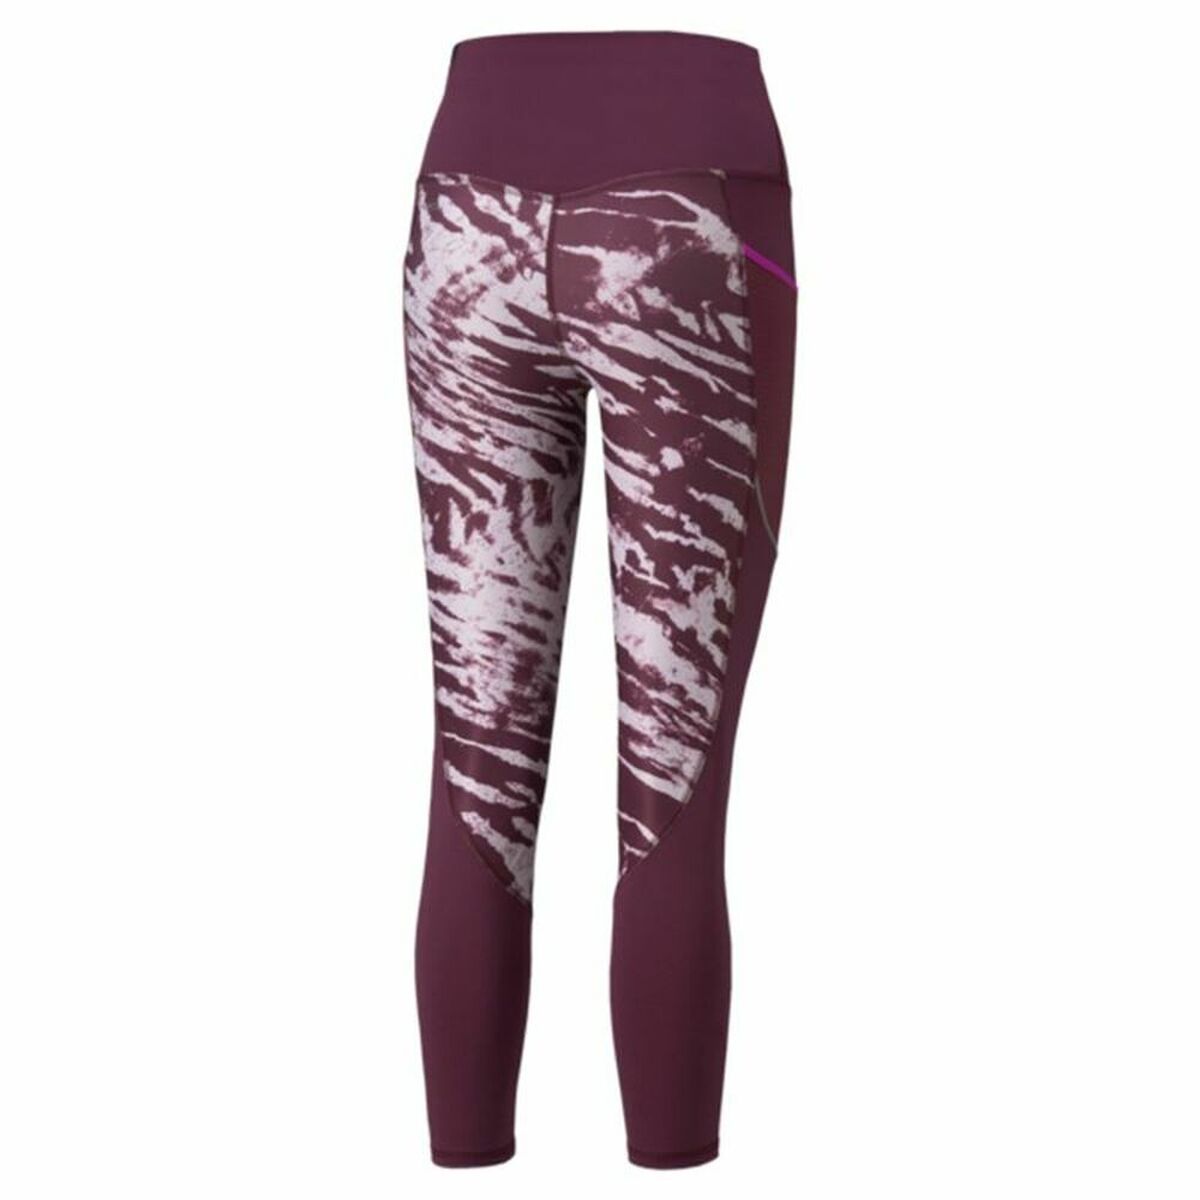 Sport leggings for Women Puma run 5k 7/8 W Purple